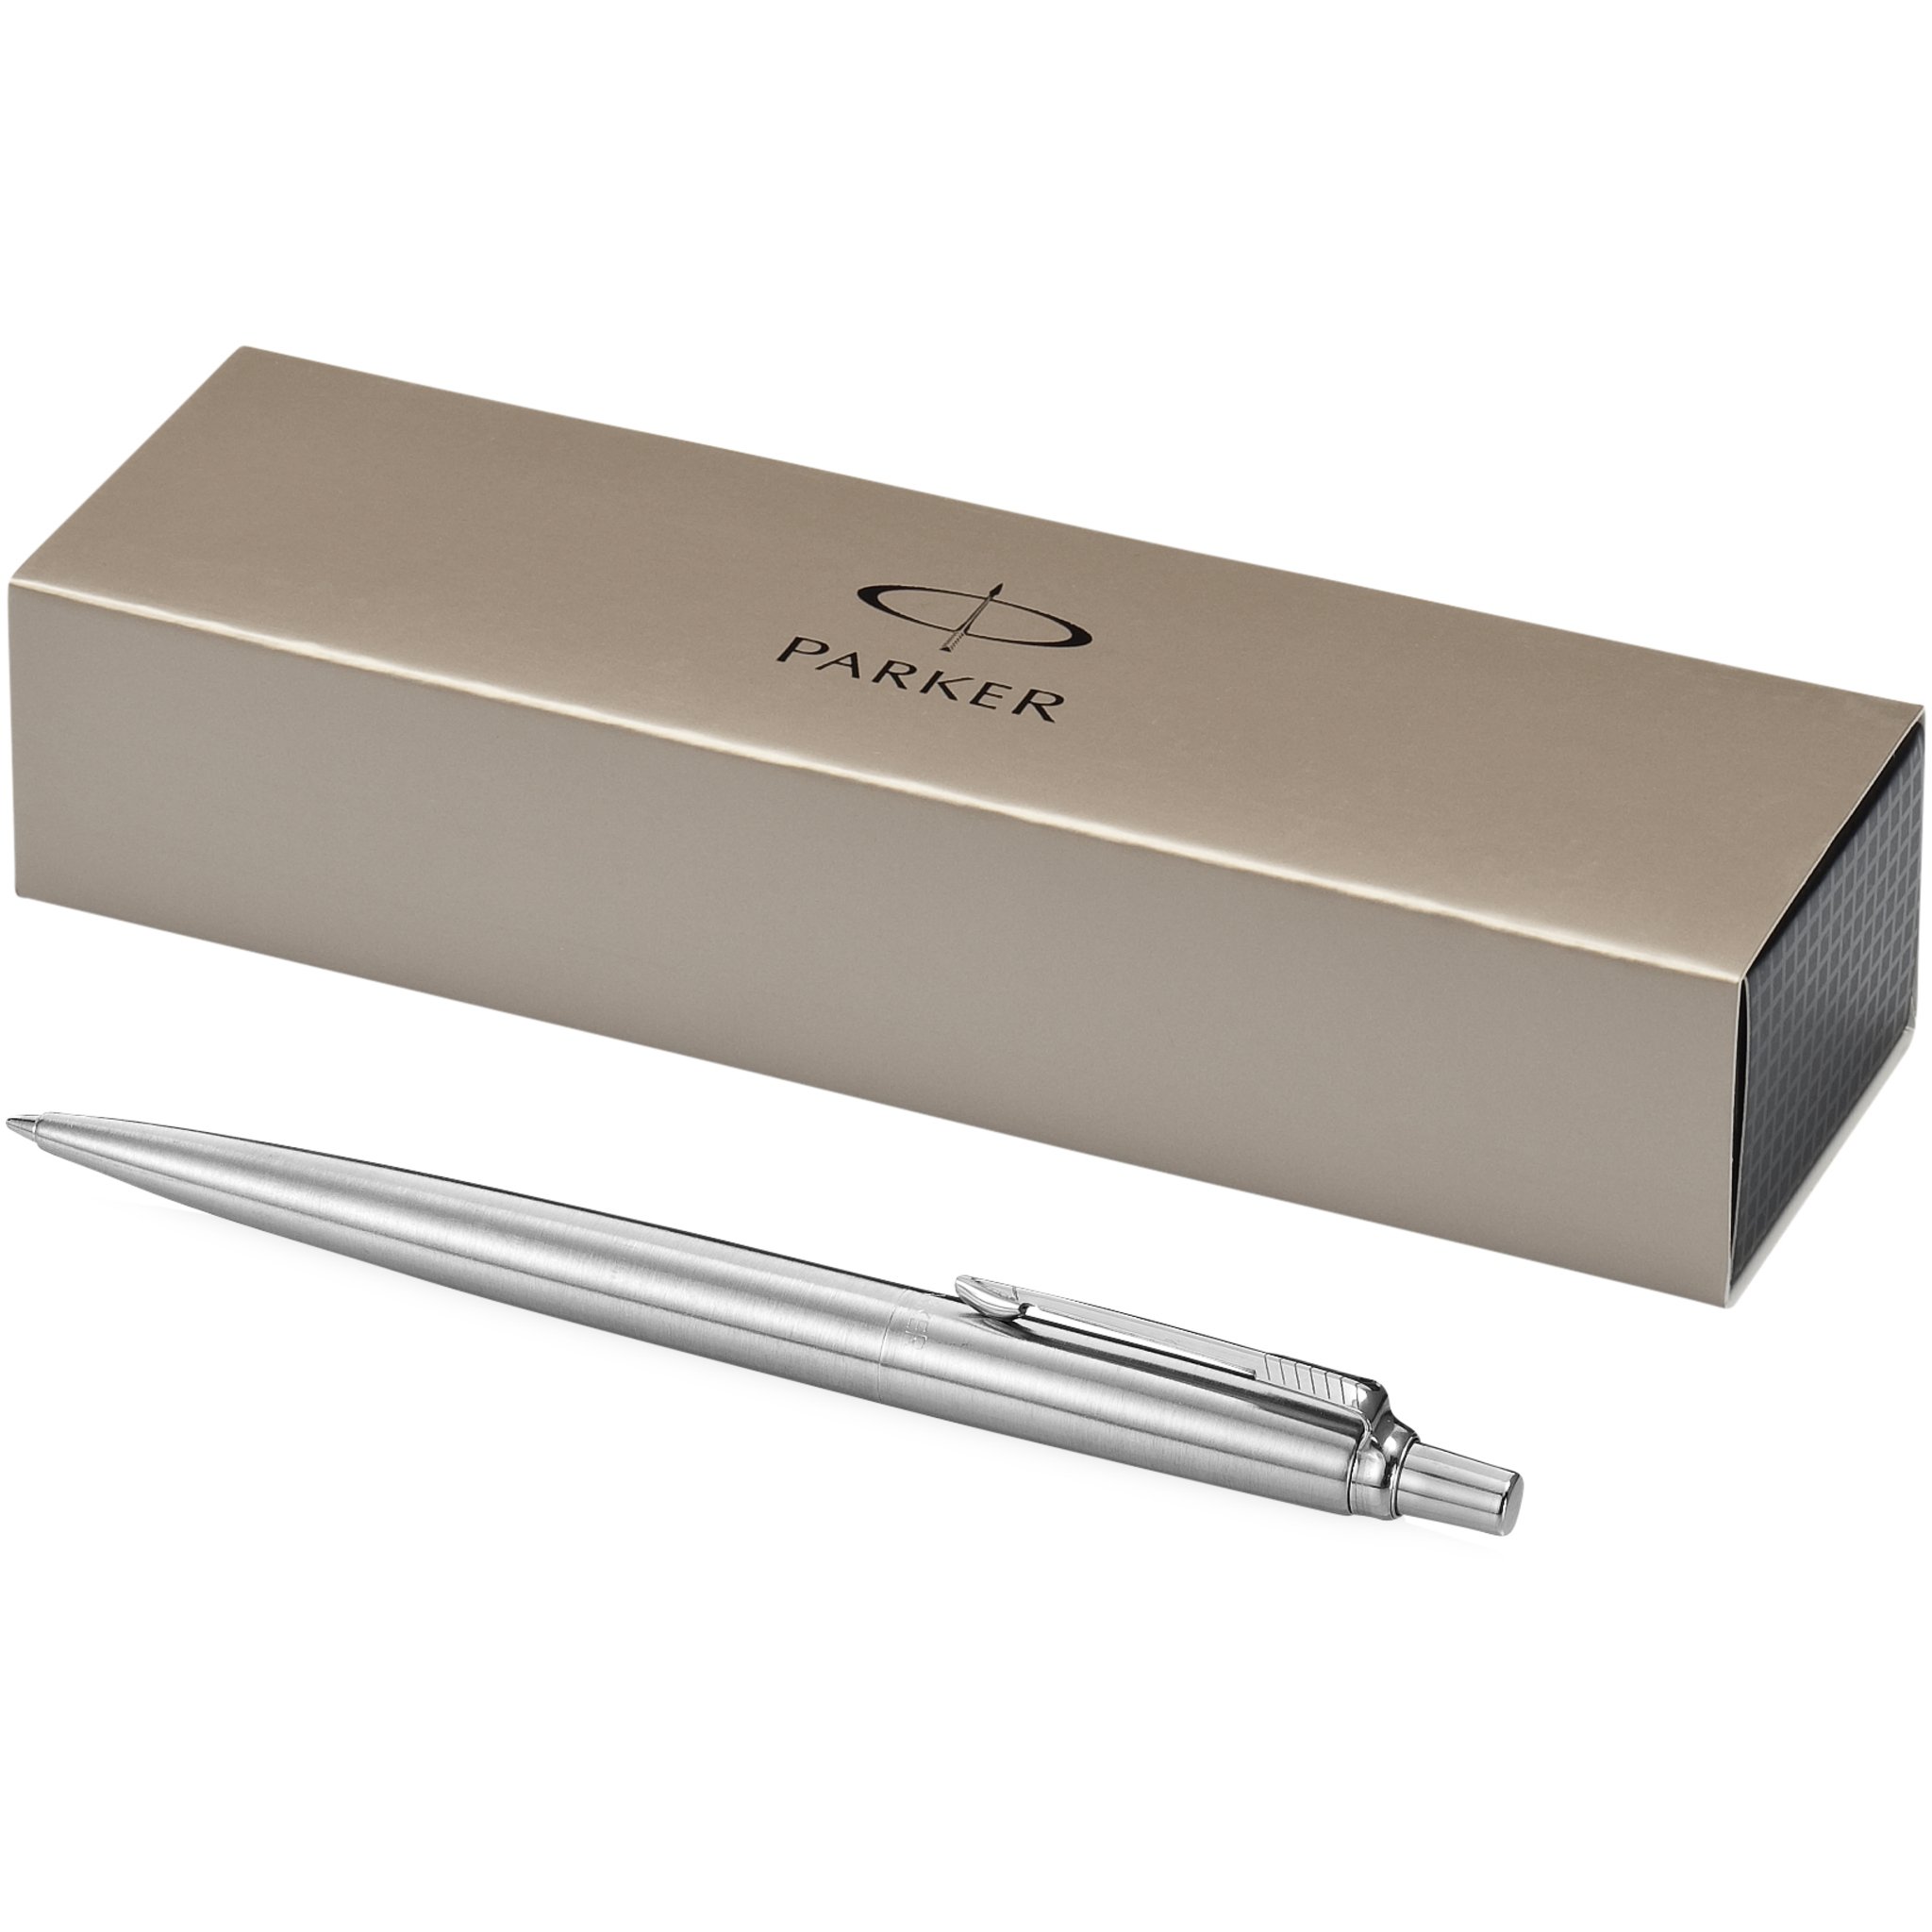 Black Ink Parker UK Parker Jotter Pen & Pencil Stainless Steel set Gift Boxed 